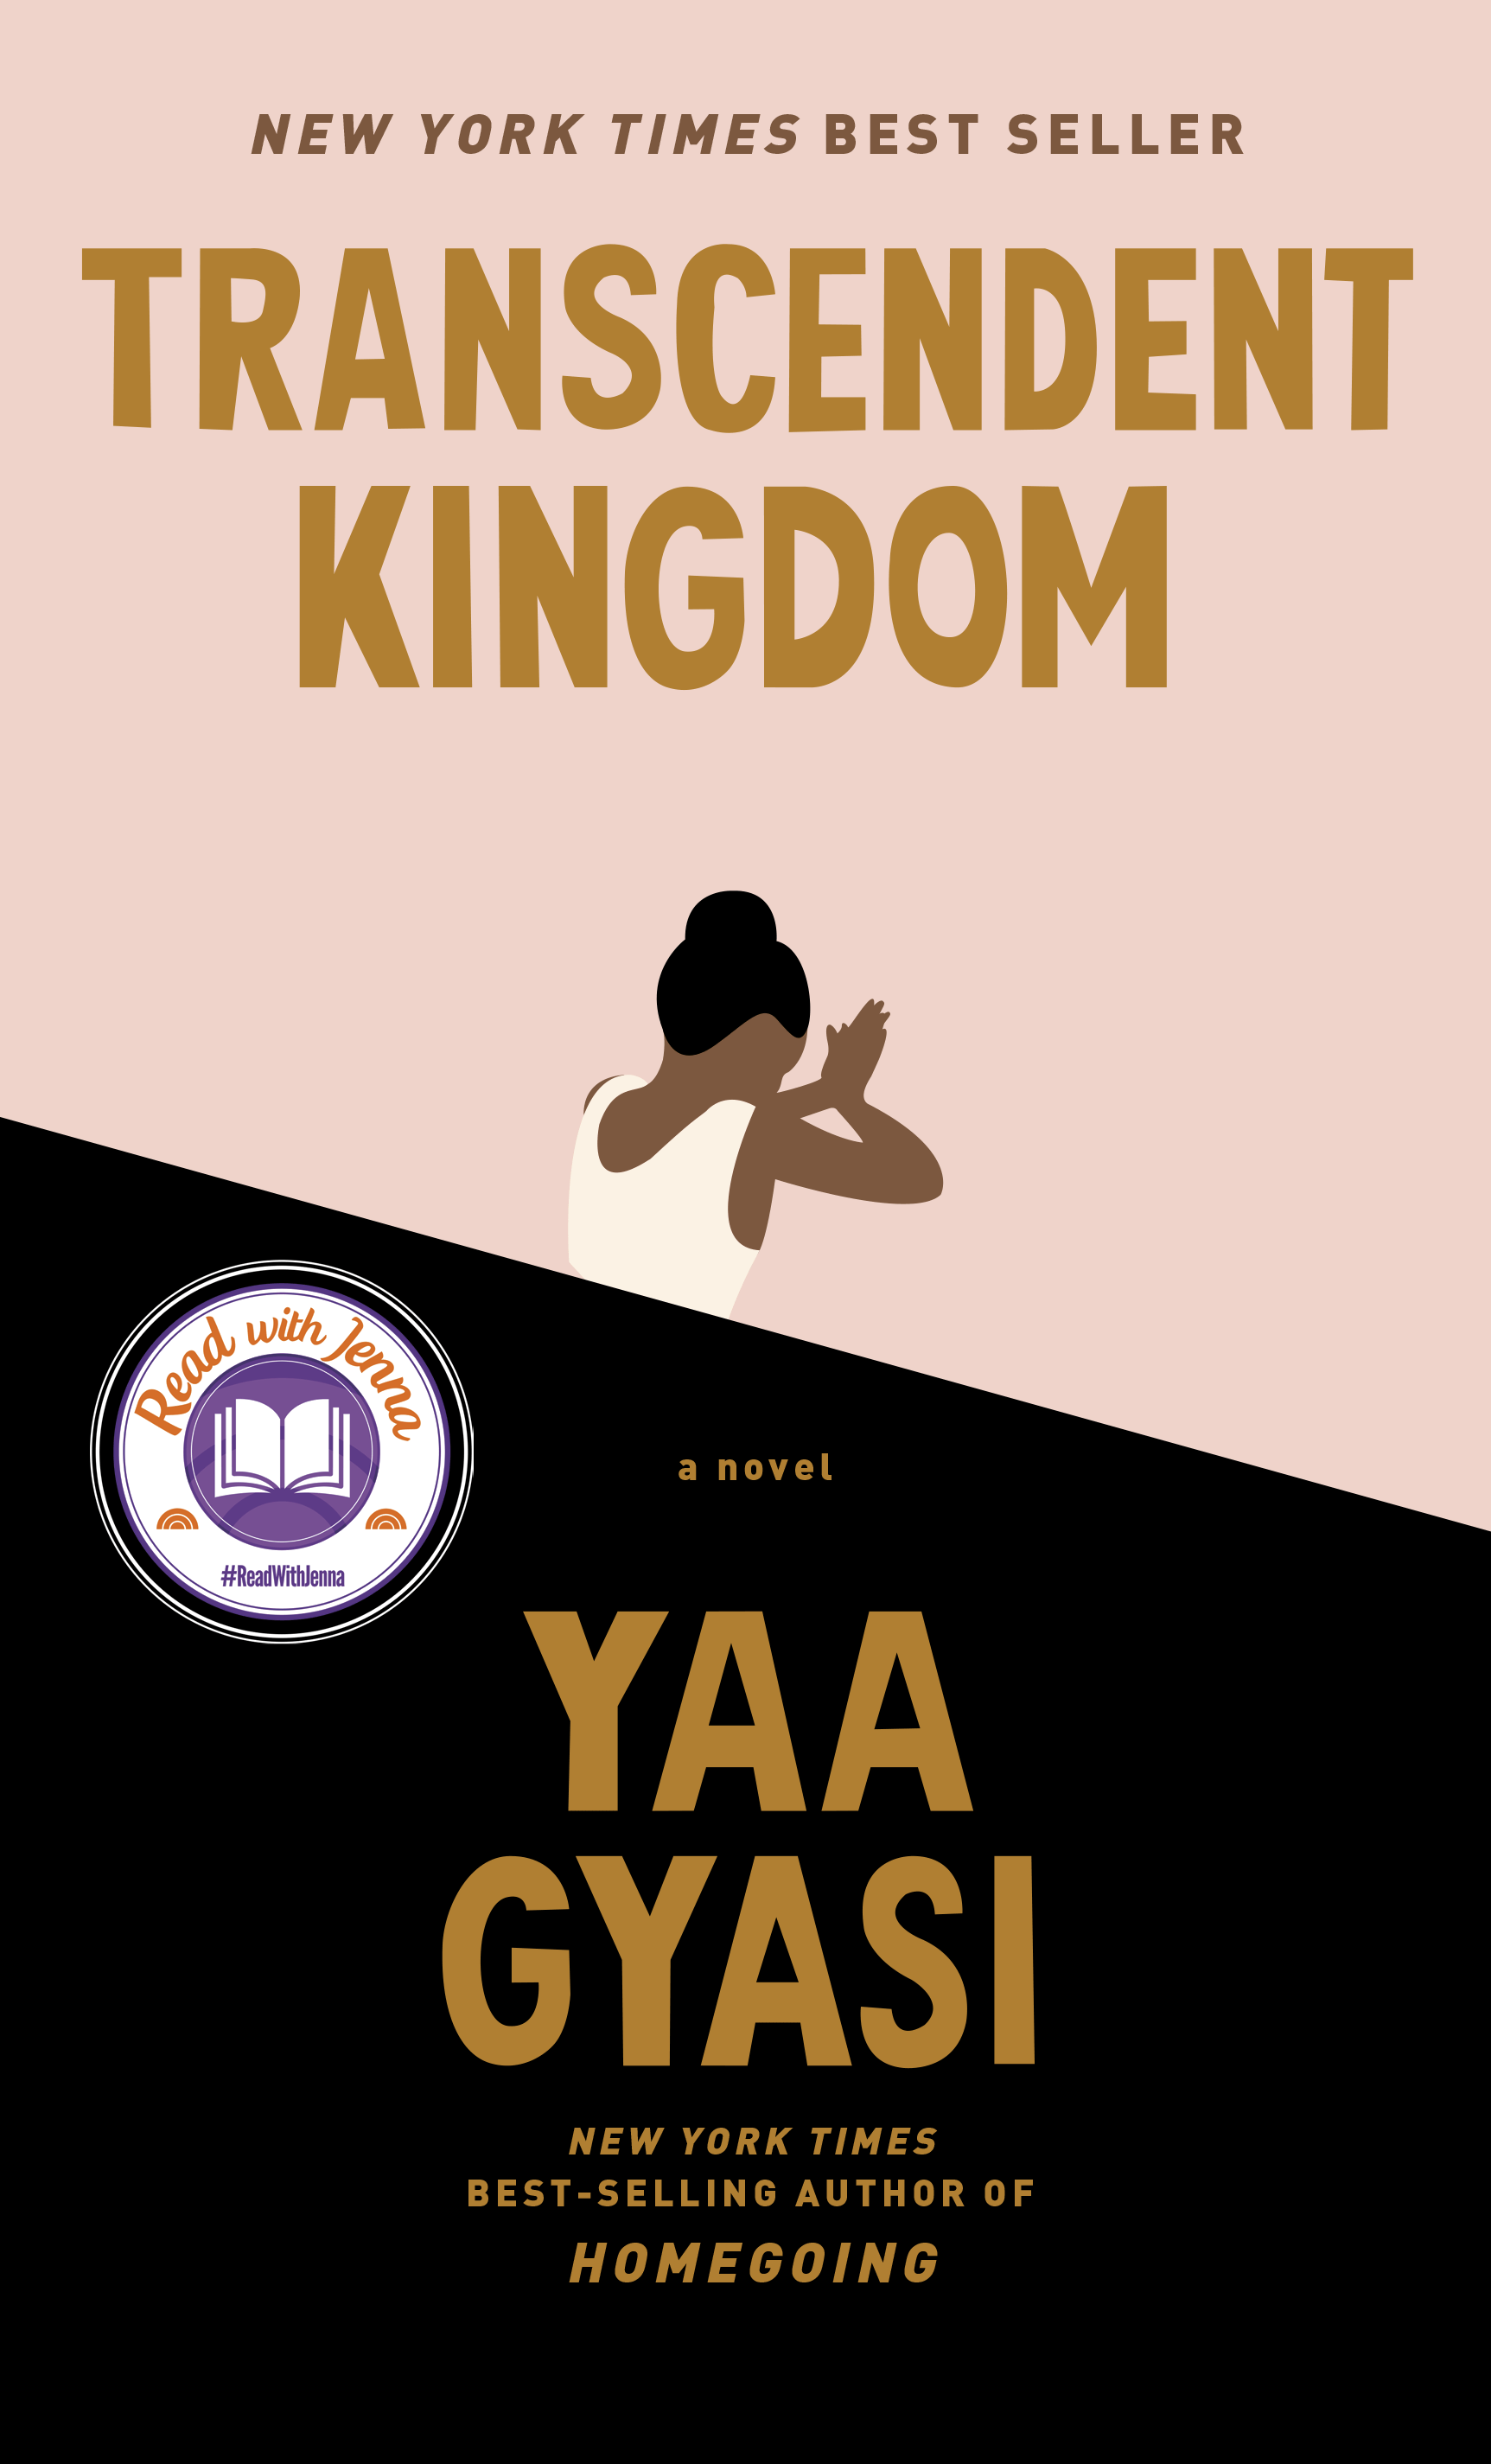 Transcendent Kingdom by Yaa Gyasy